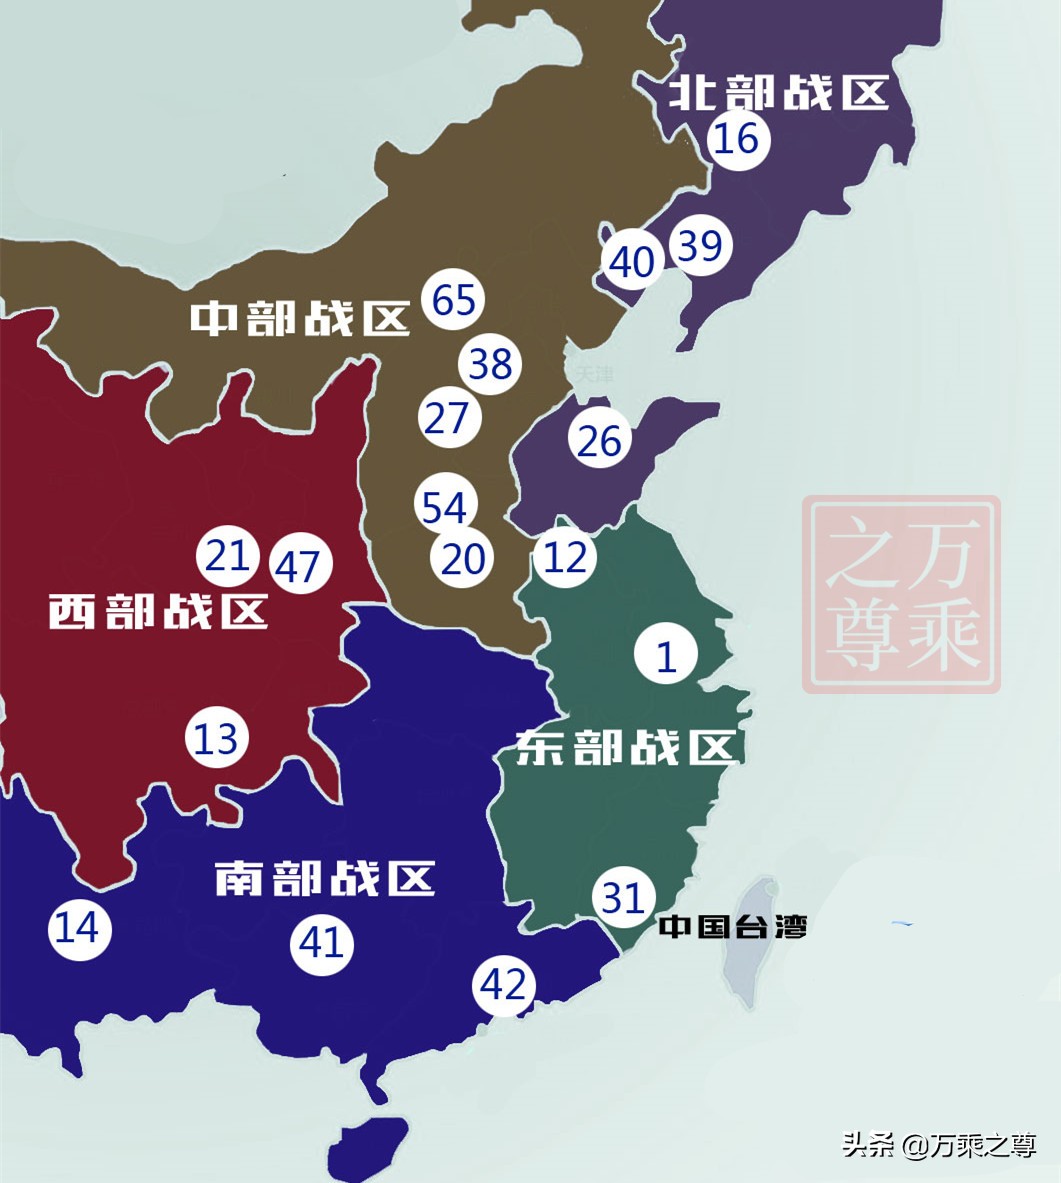 现在中国有几大军区分别在哪里七大军区变五大战区